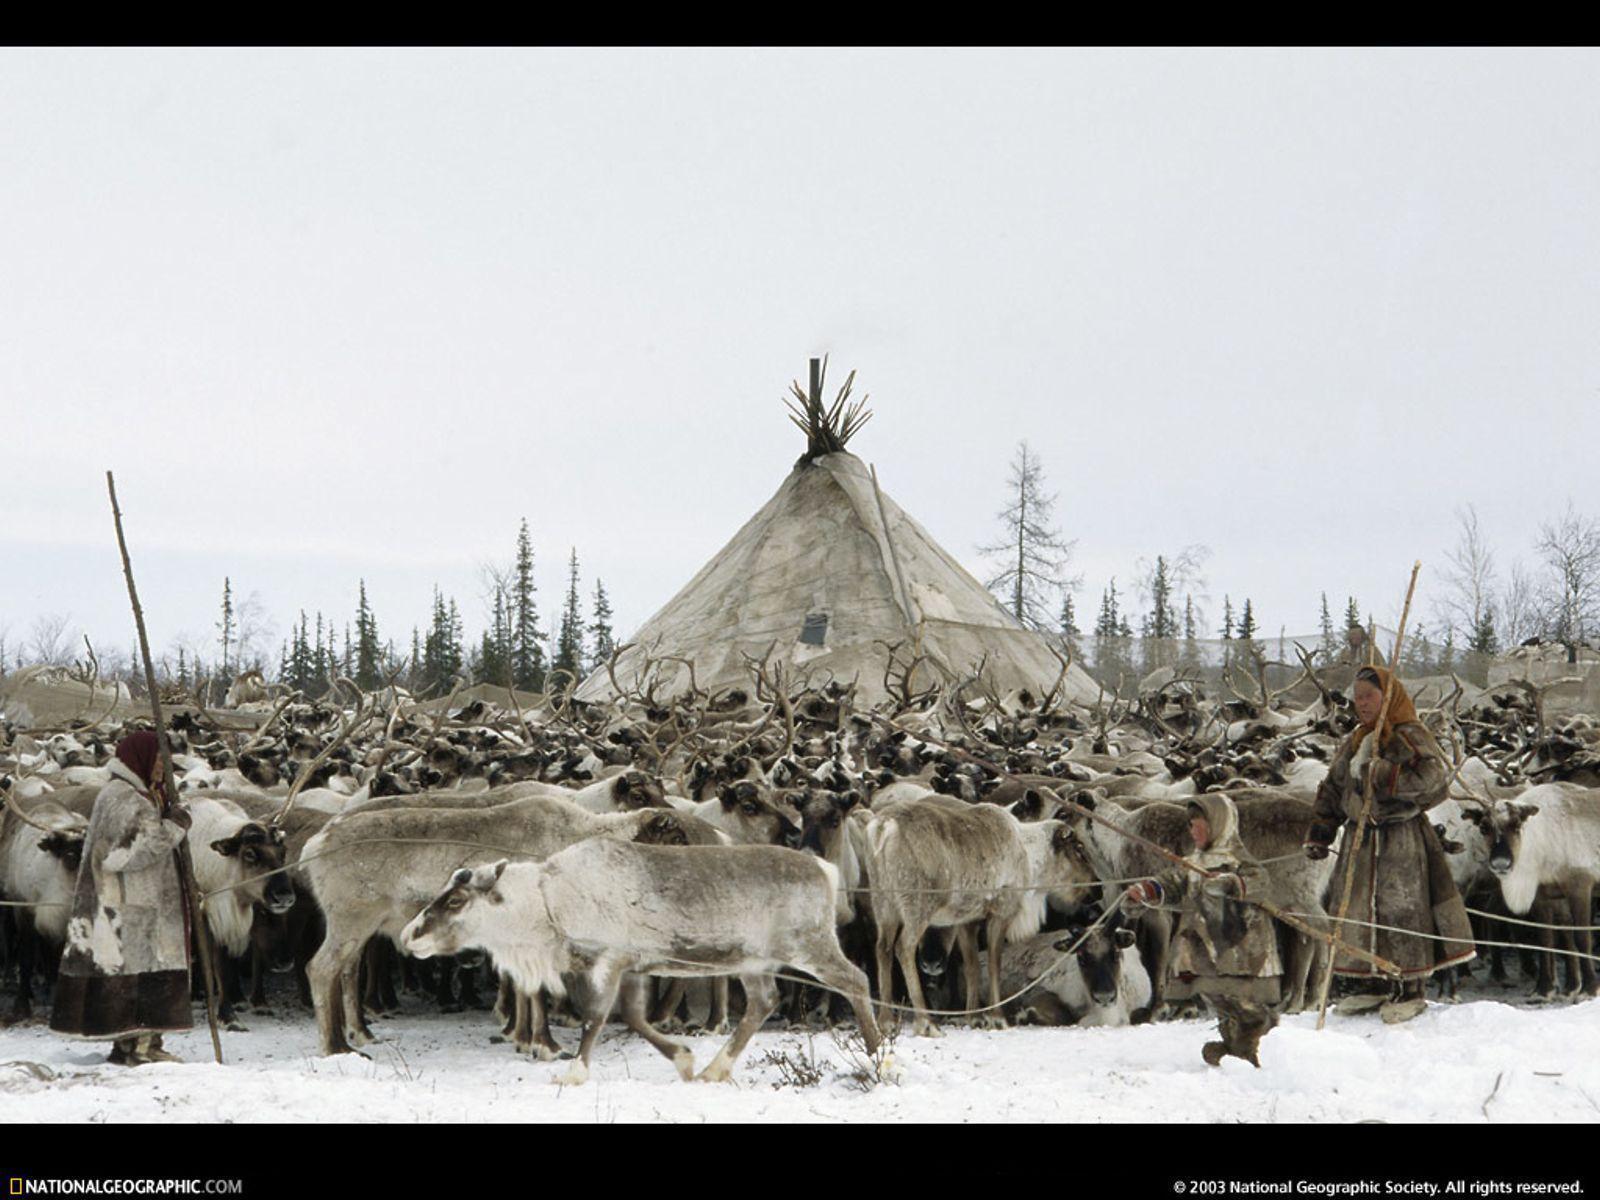 Reindeer Herd, Siberia, Russia, 1996.net quality